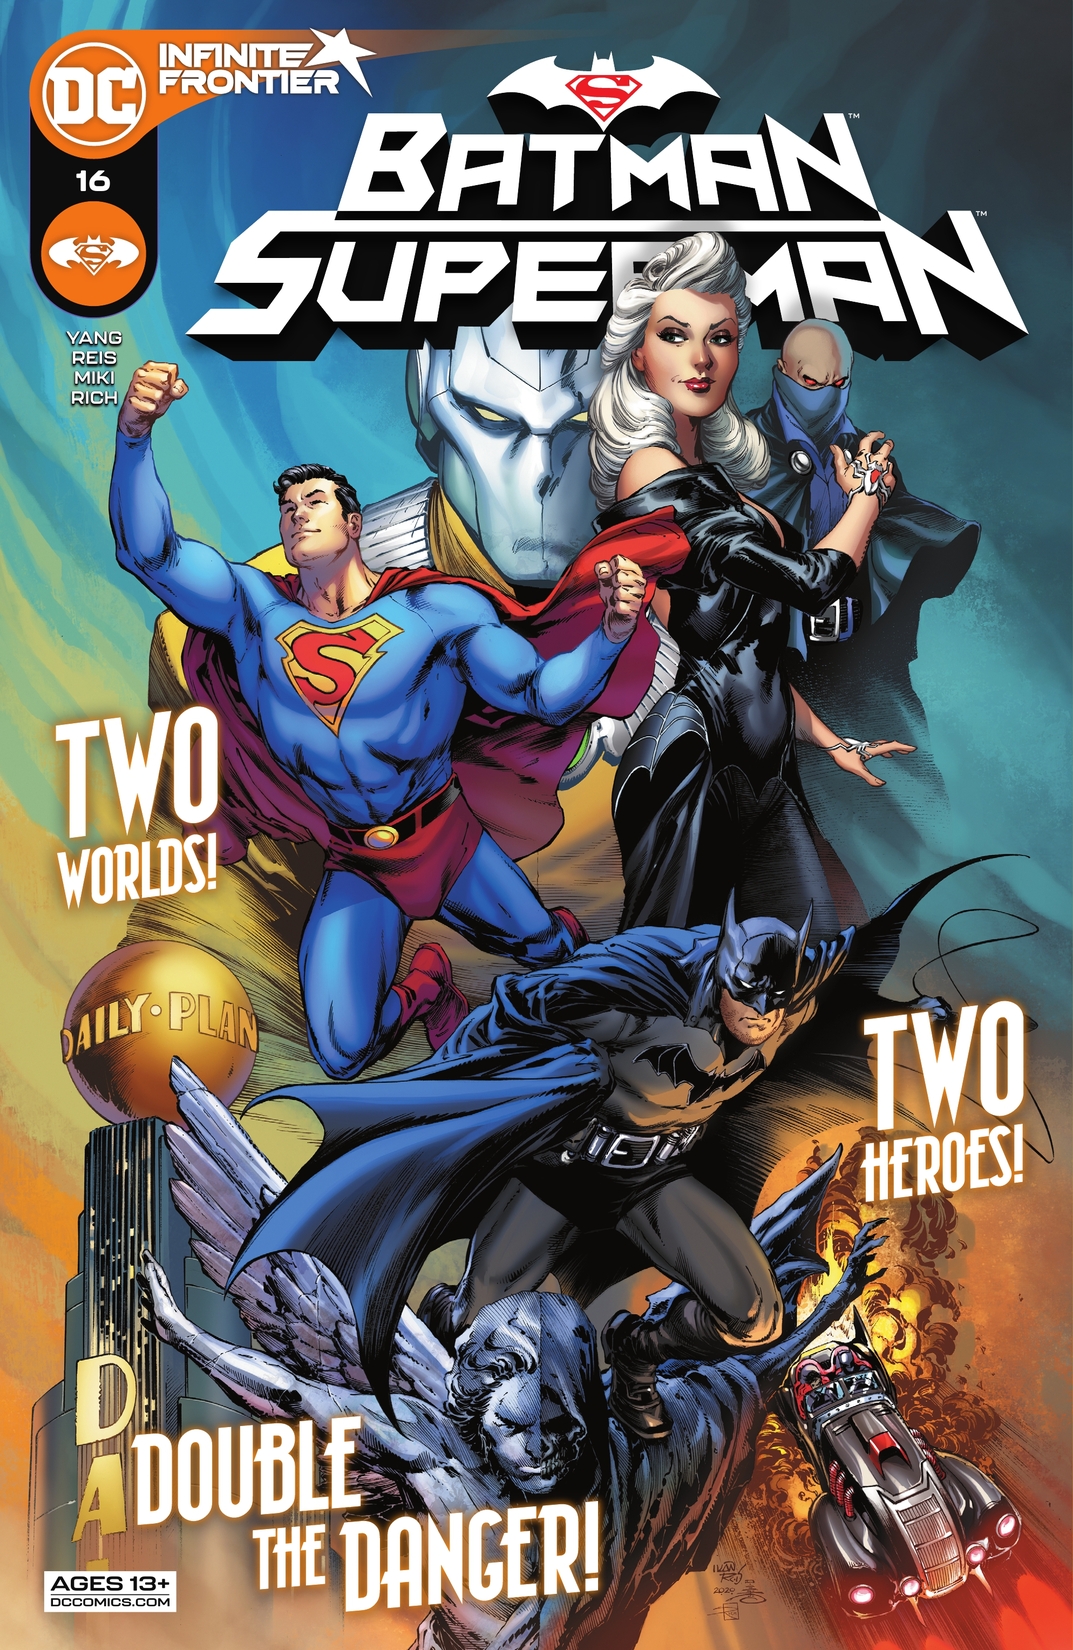 Batman/Superman (2019-) #16 preview images